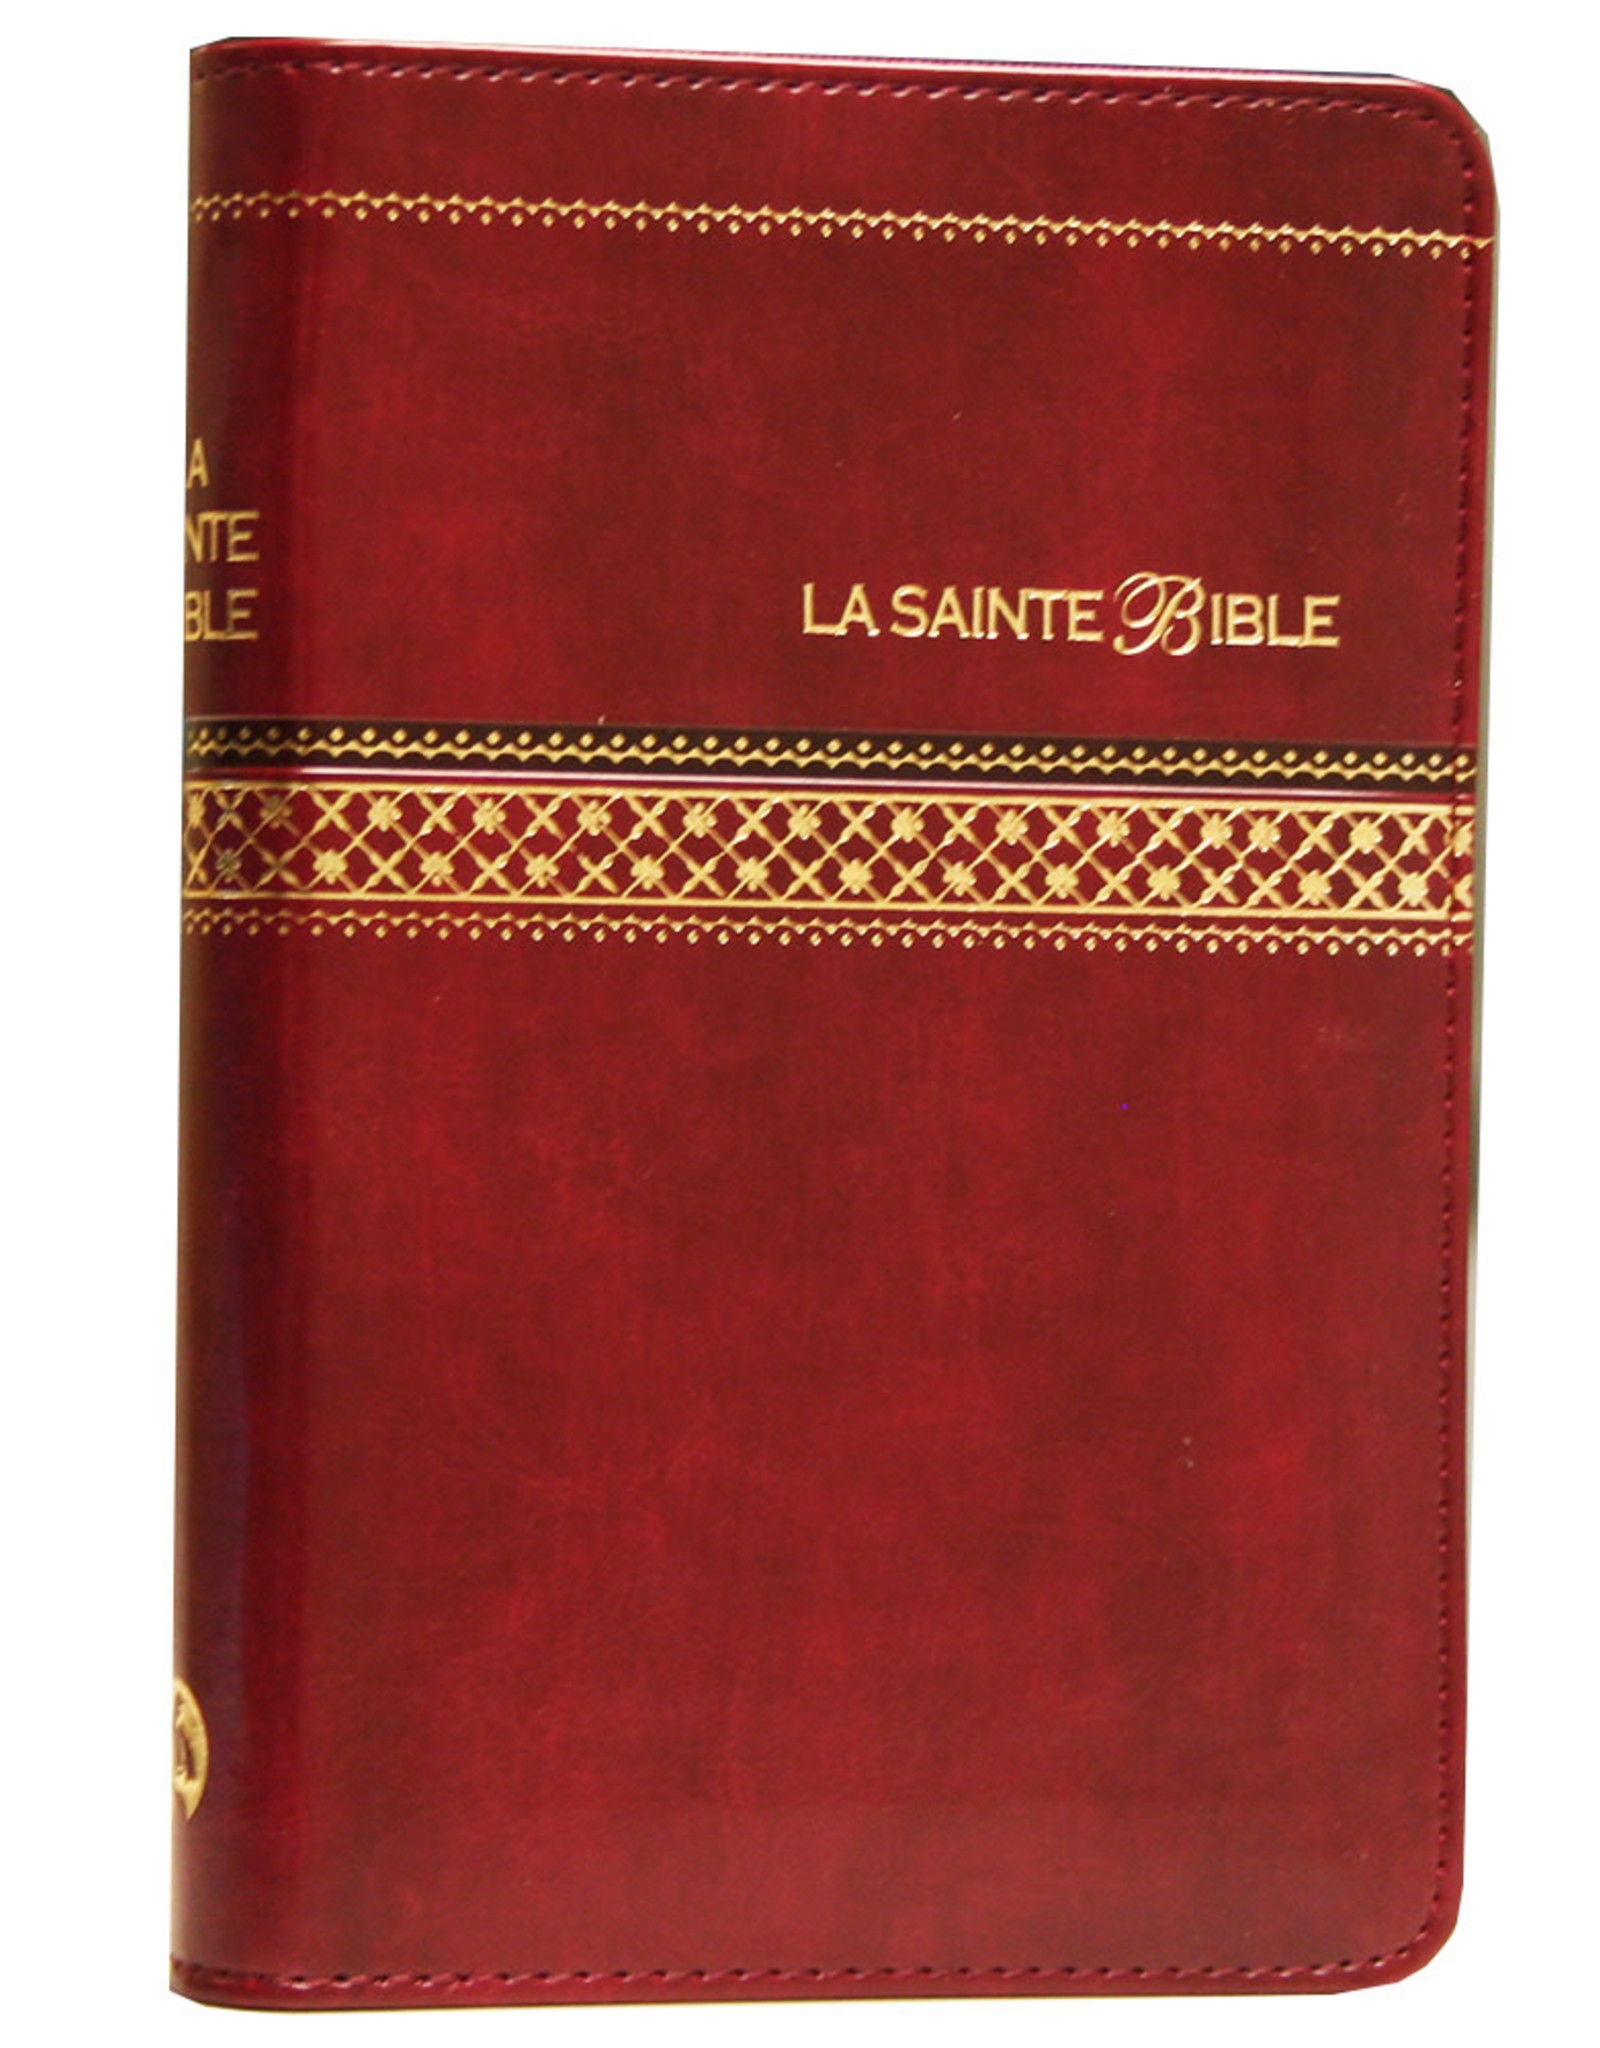 Bible Louis Segond 1910, petit caractère, fermeture éclaire, onglet